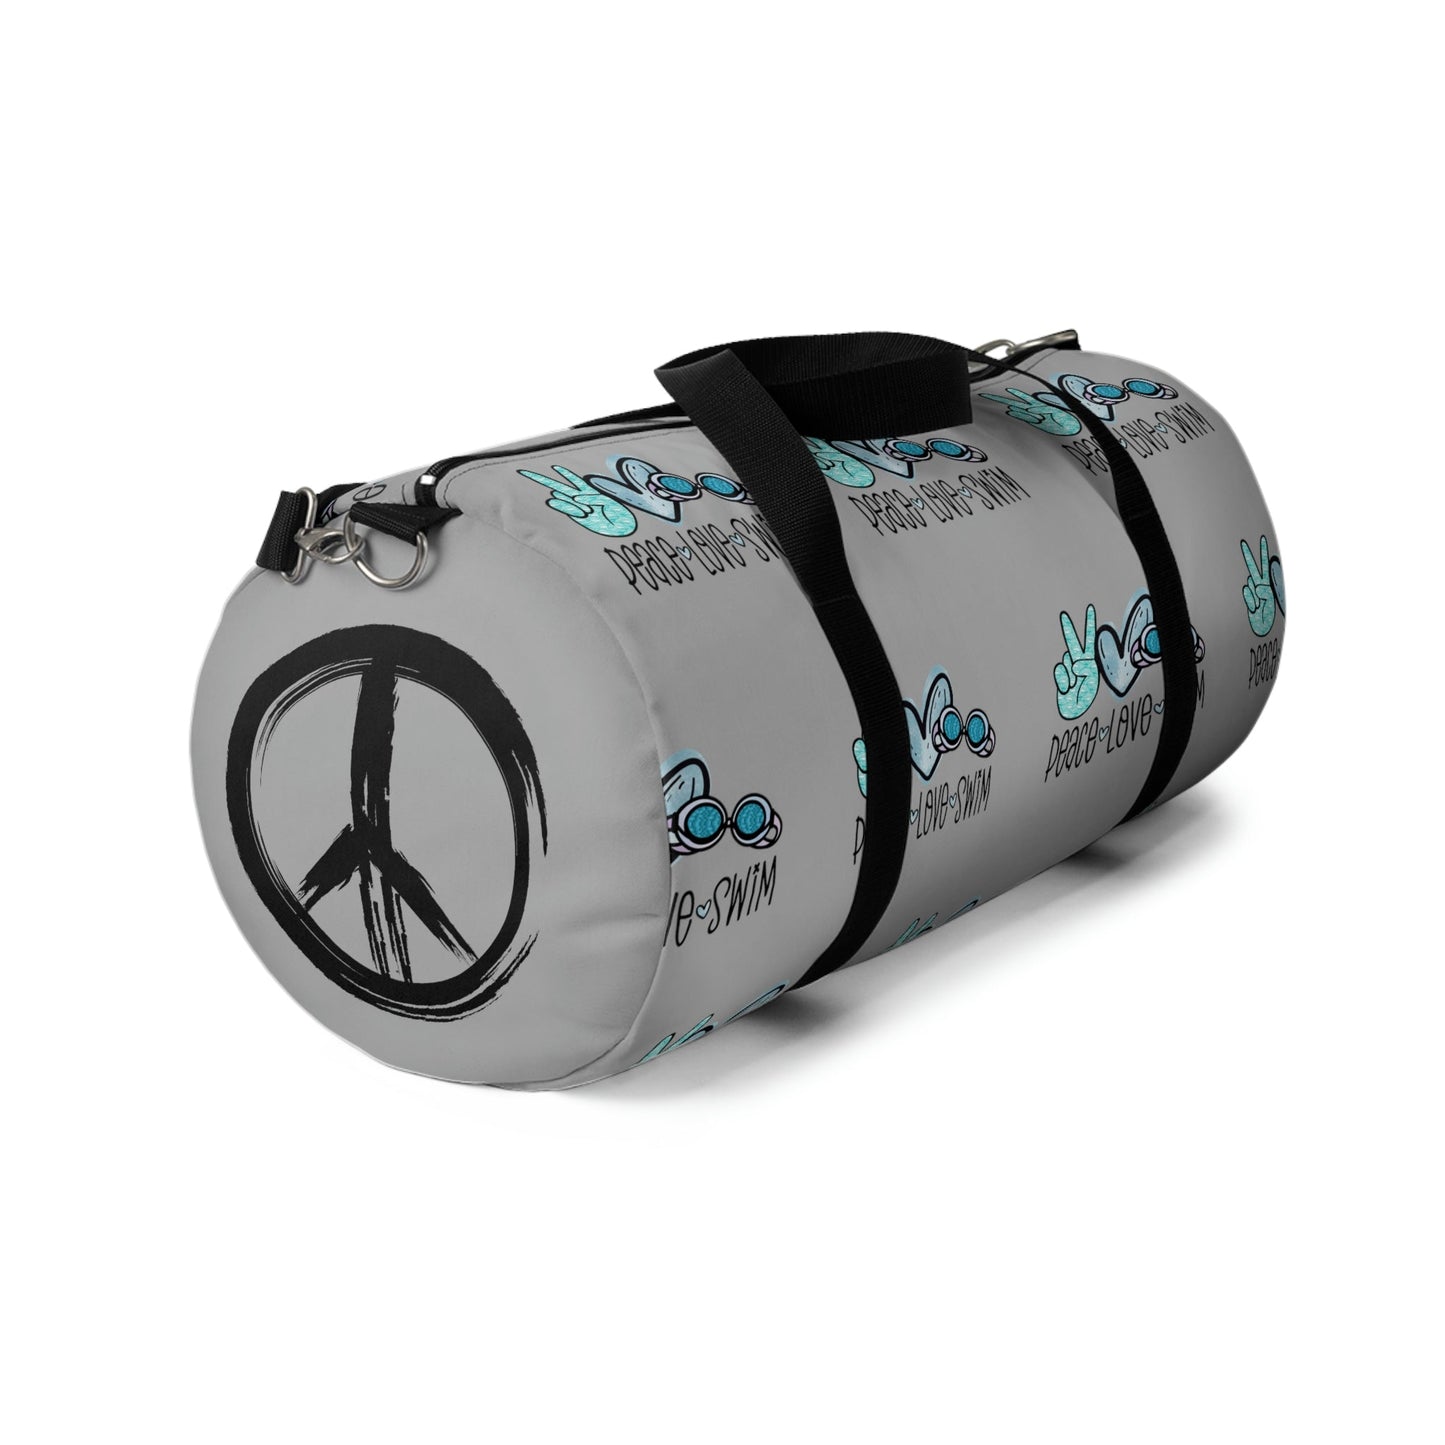 Peace.Love.Swim- Swimmer Pool Bag